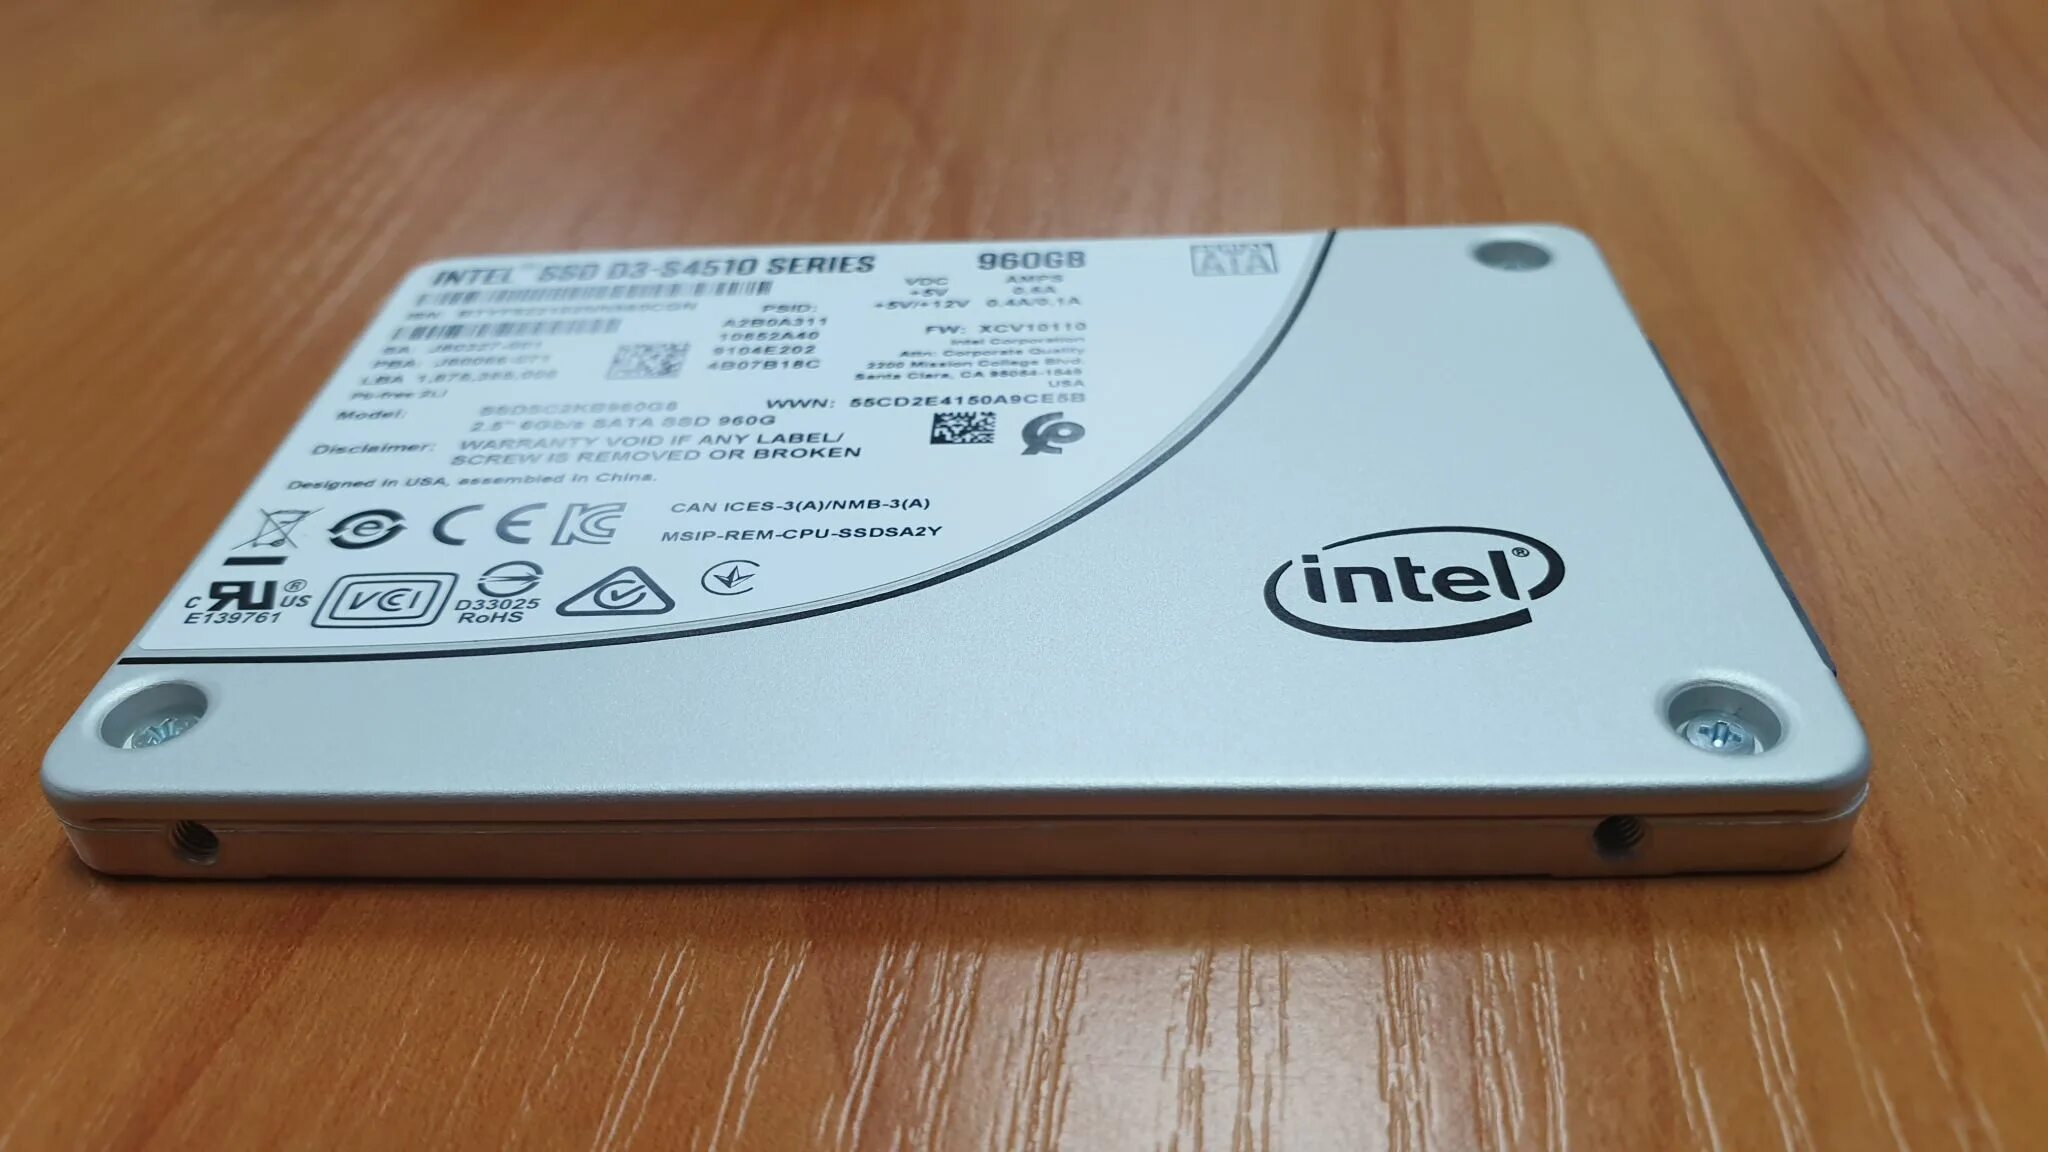 Ssd intel d3 s4510. SSD Intel 960gb. SSD Intel 4510. SSD Intel s4500 960gb. SSD Intel 500gb.